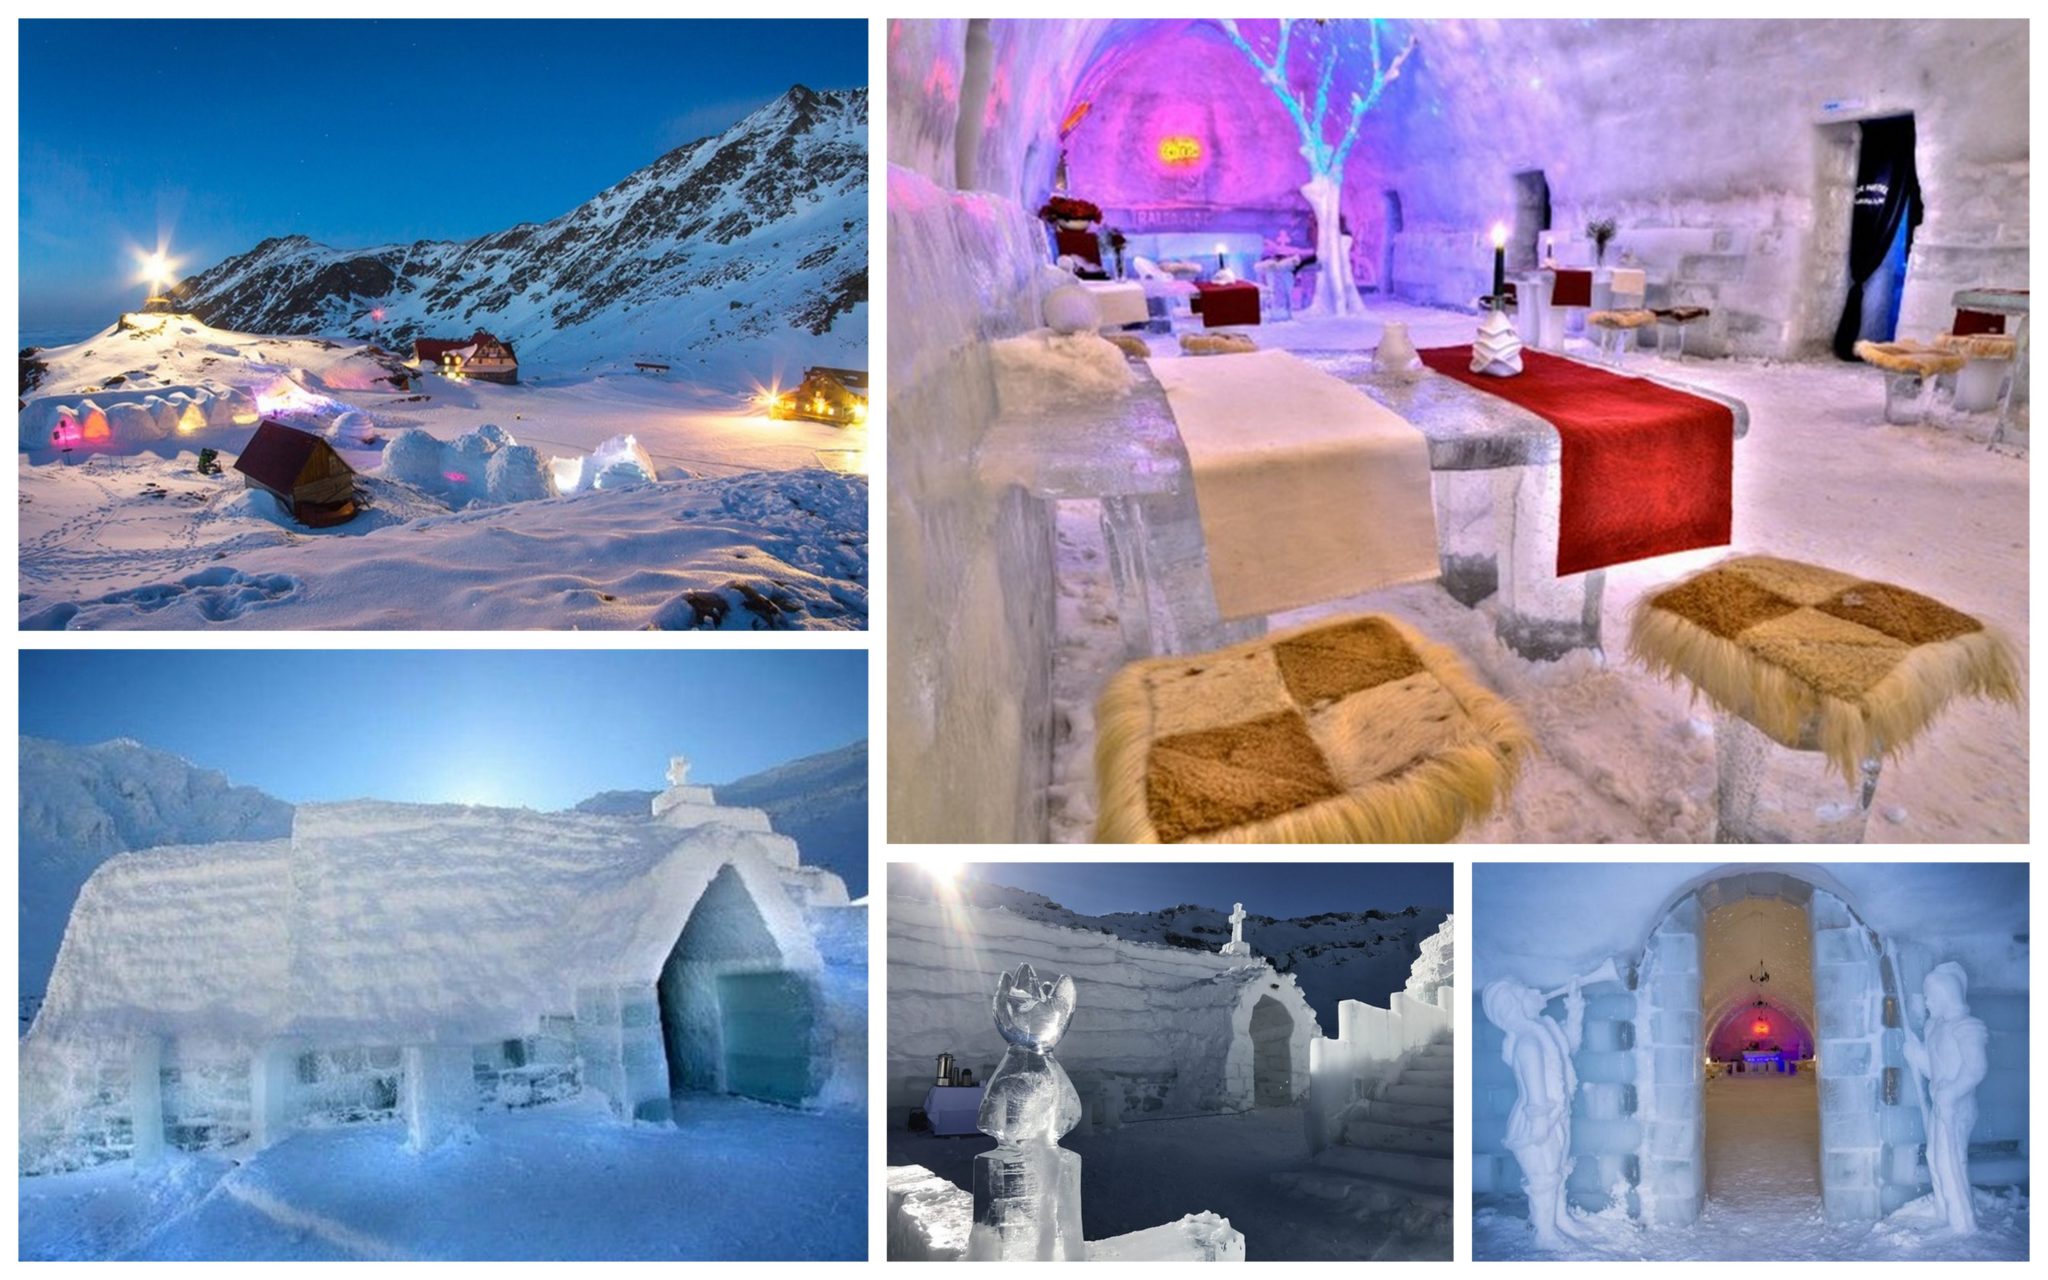 Eis Hotel in Rumänien 2 Tage am Balea See im coolen Hotel komplett aus Eis schon für 45€